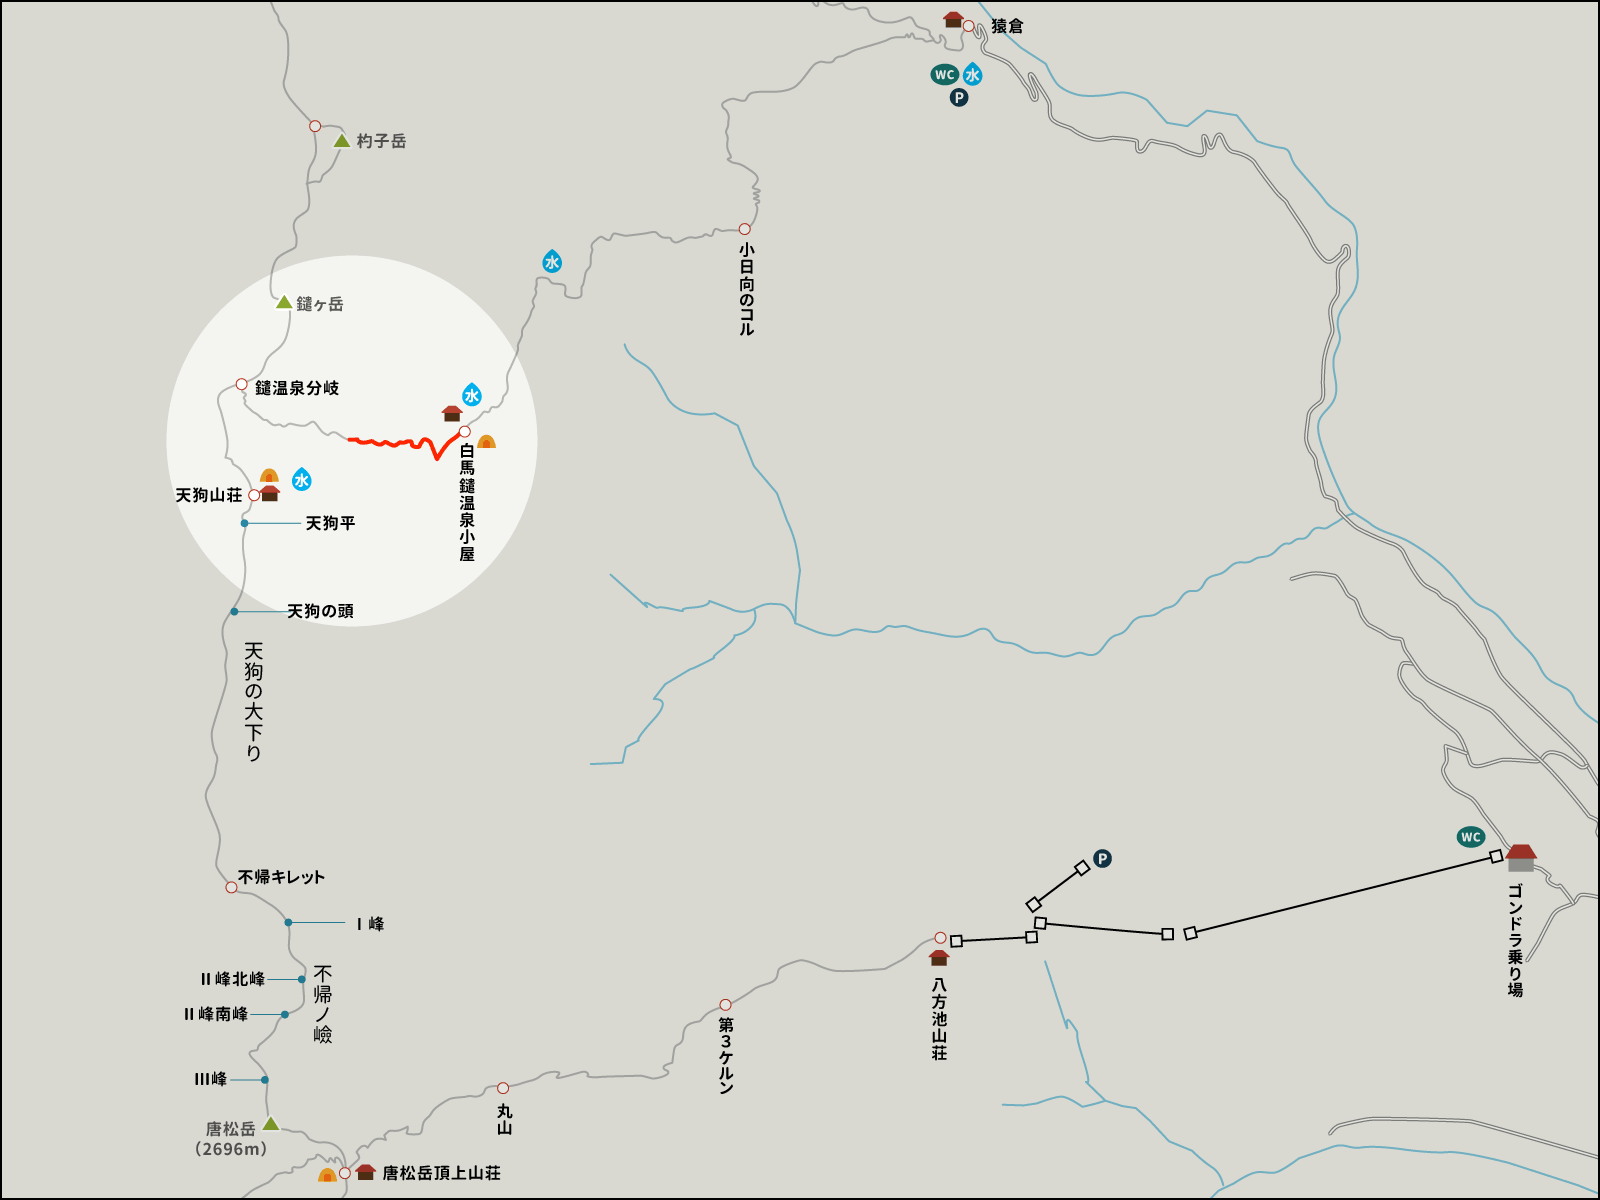 白馬鑓温泉周囲の鎖場のイラストマップ